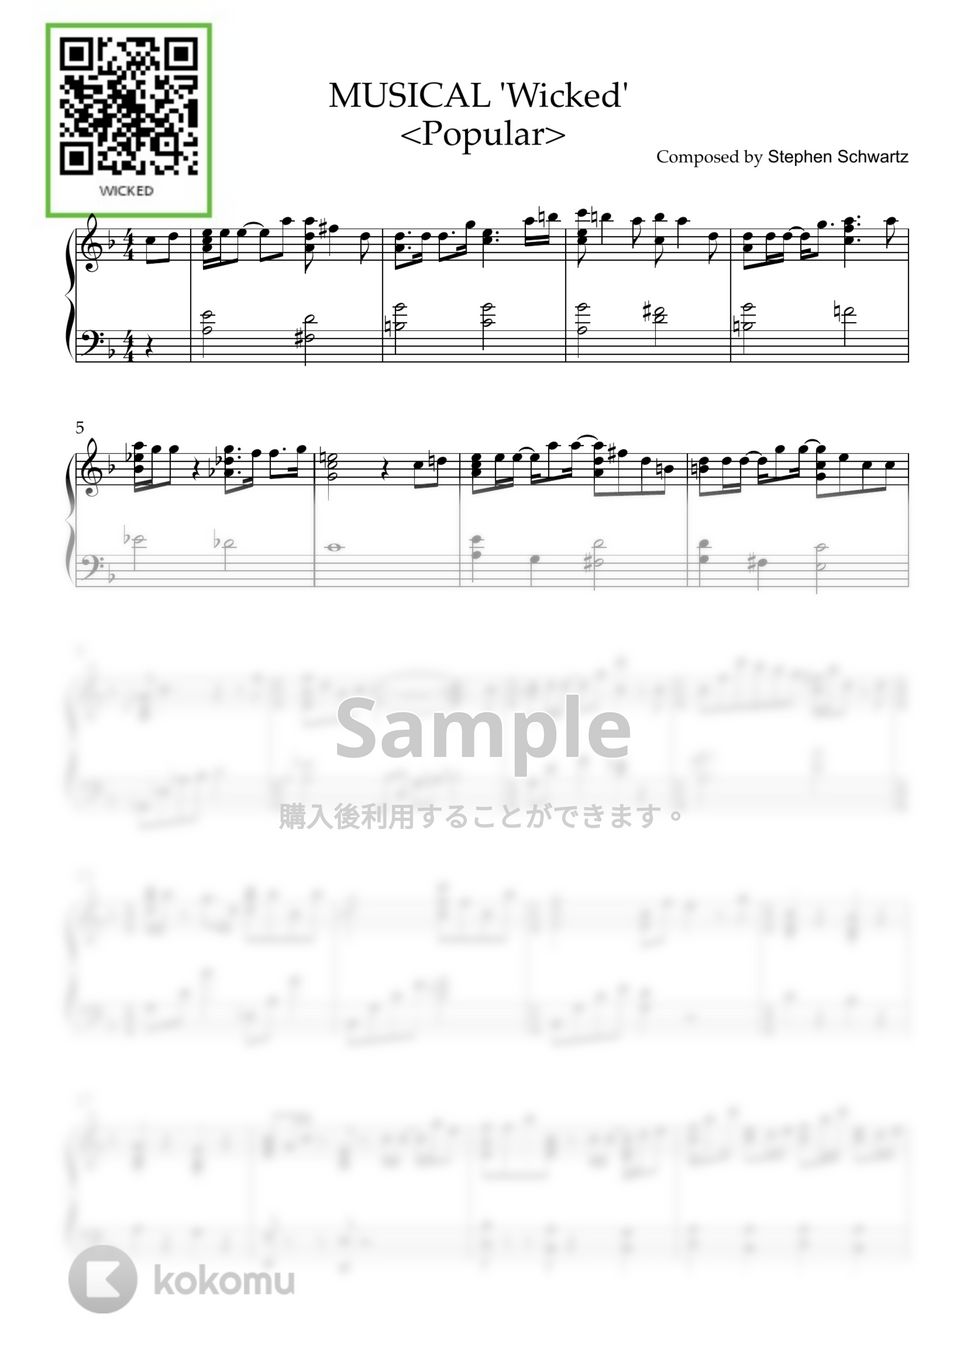 ミュージカル『 Wicked』 - Popular (PIANO SOLO) by CLOUD LADDER 구름사다리뮤직